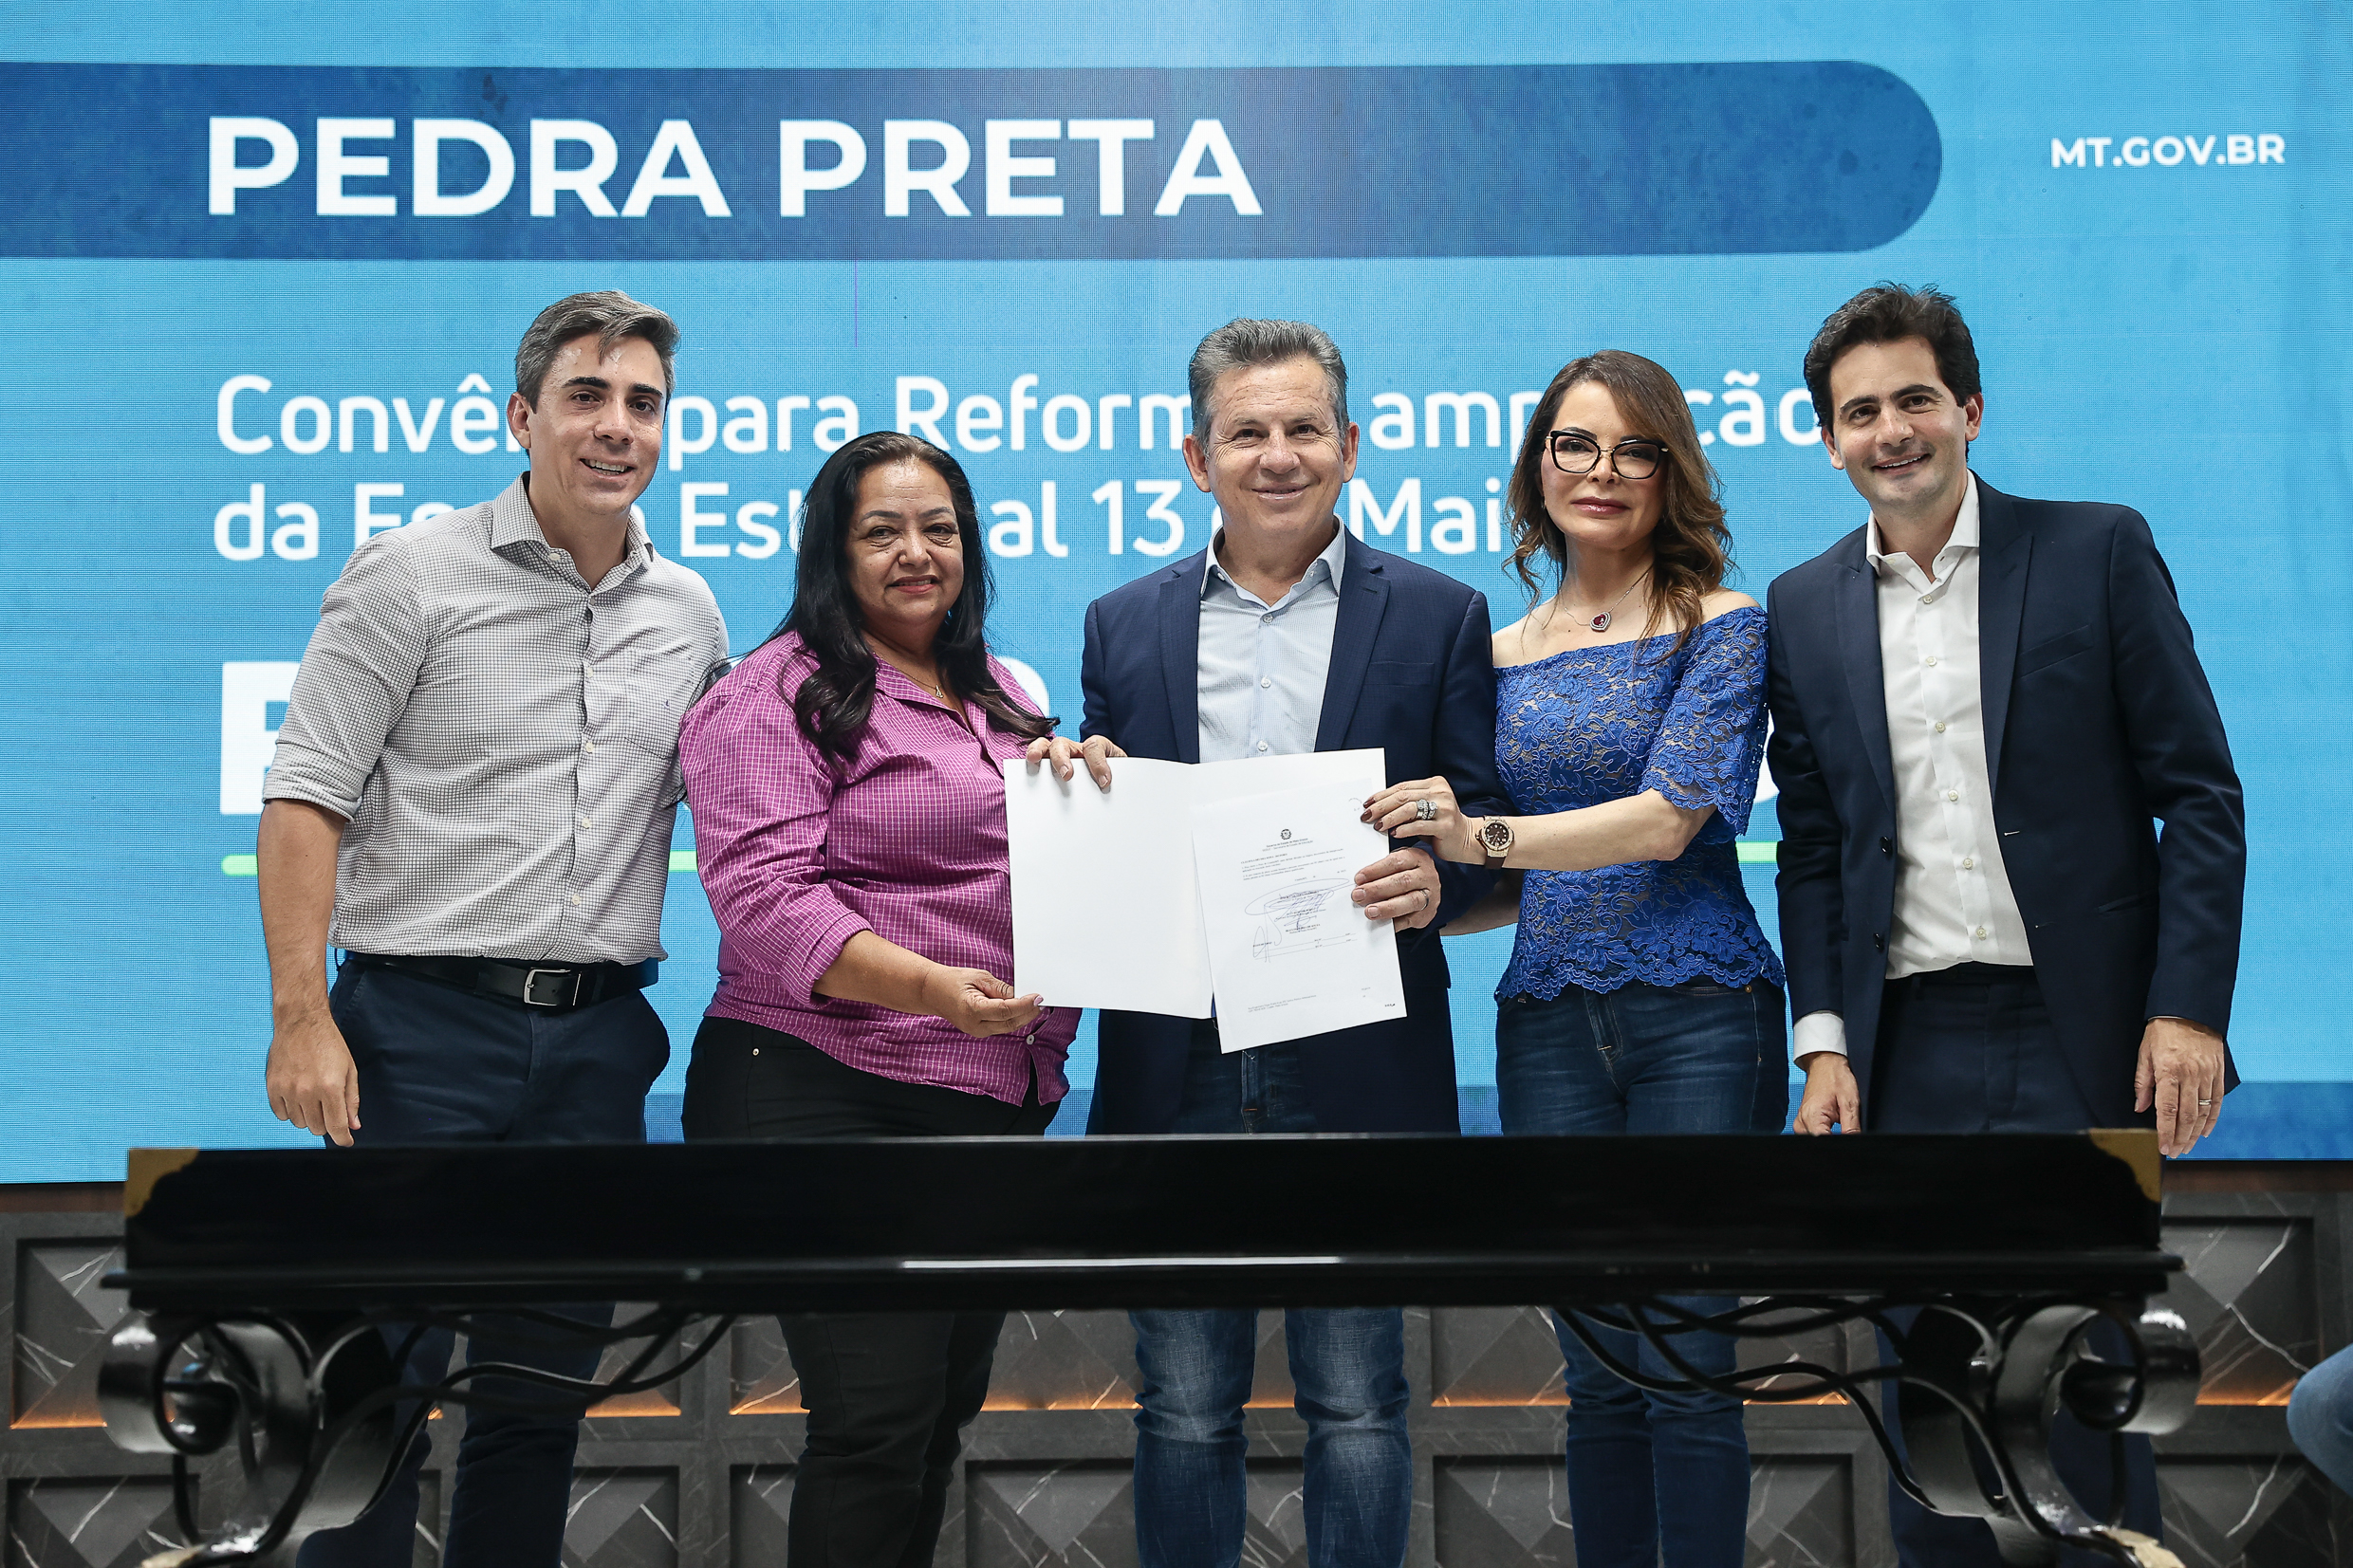 Pedra Preta | Iraci assina convênio com Estado de R$ 1,3 milhões para reforma e ampliação da Escola 13 de Maio